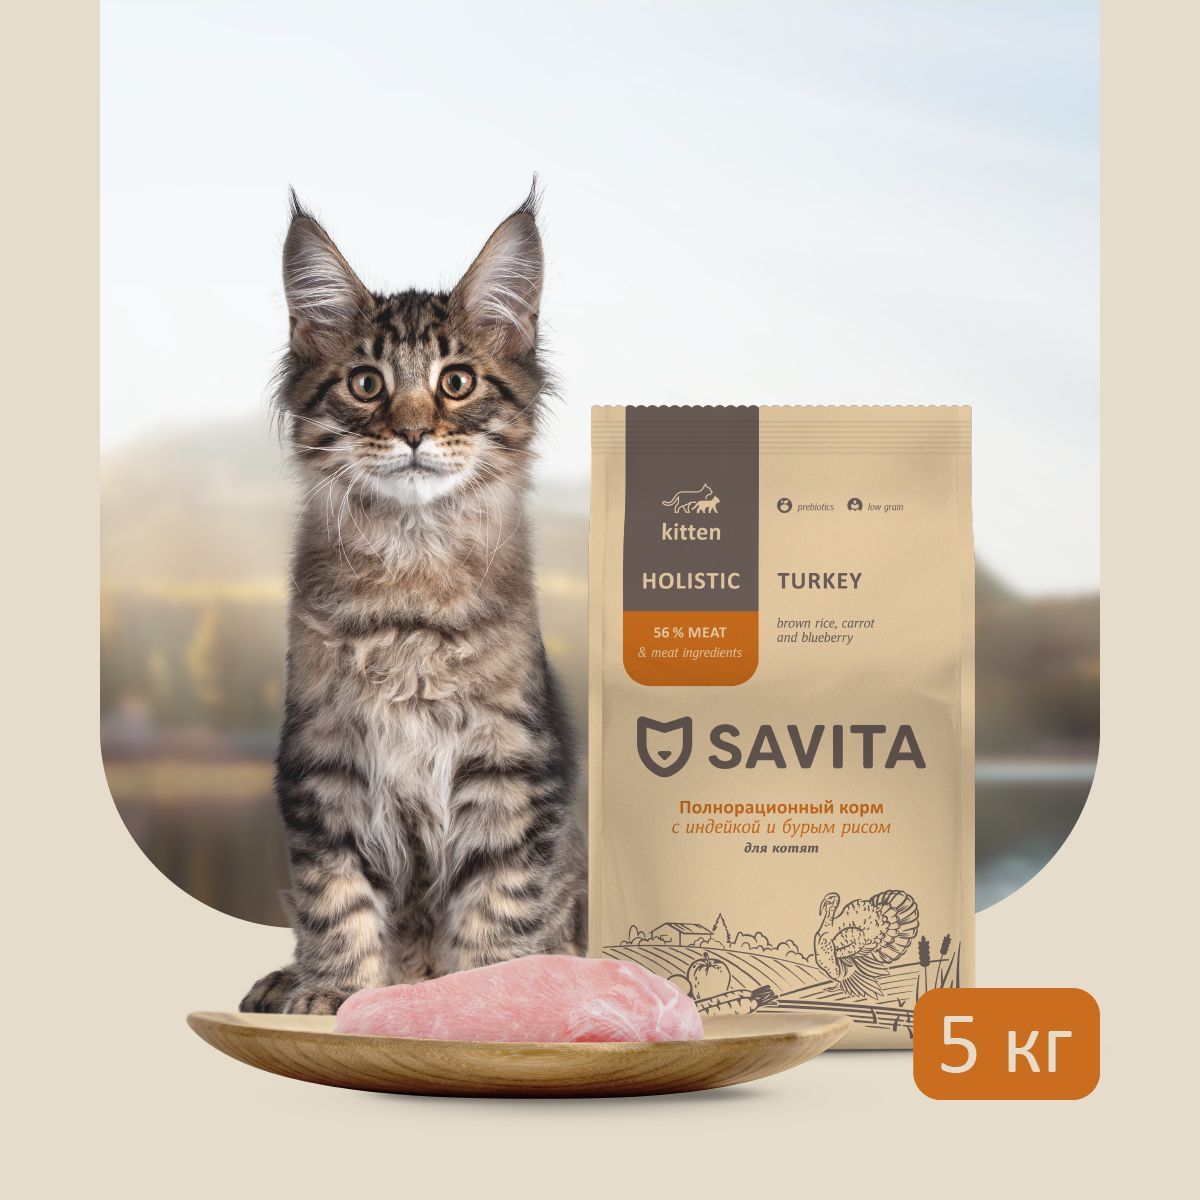 Савита корм для котят. Савита корм для кошек. Savita корм для кошек.